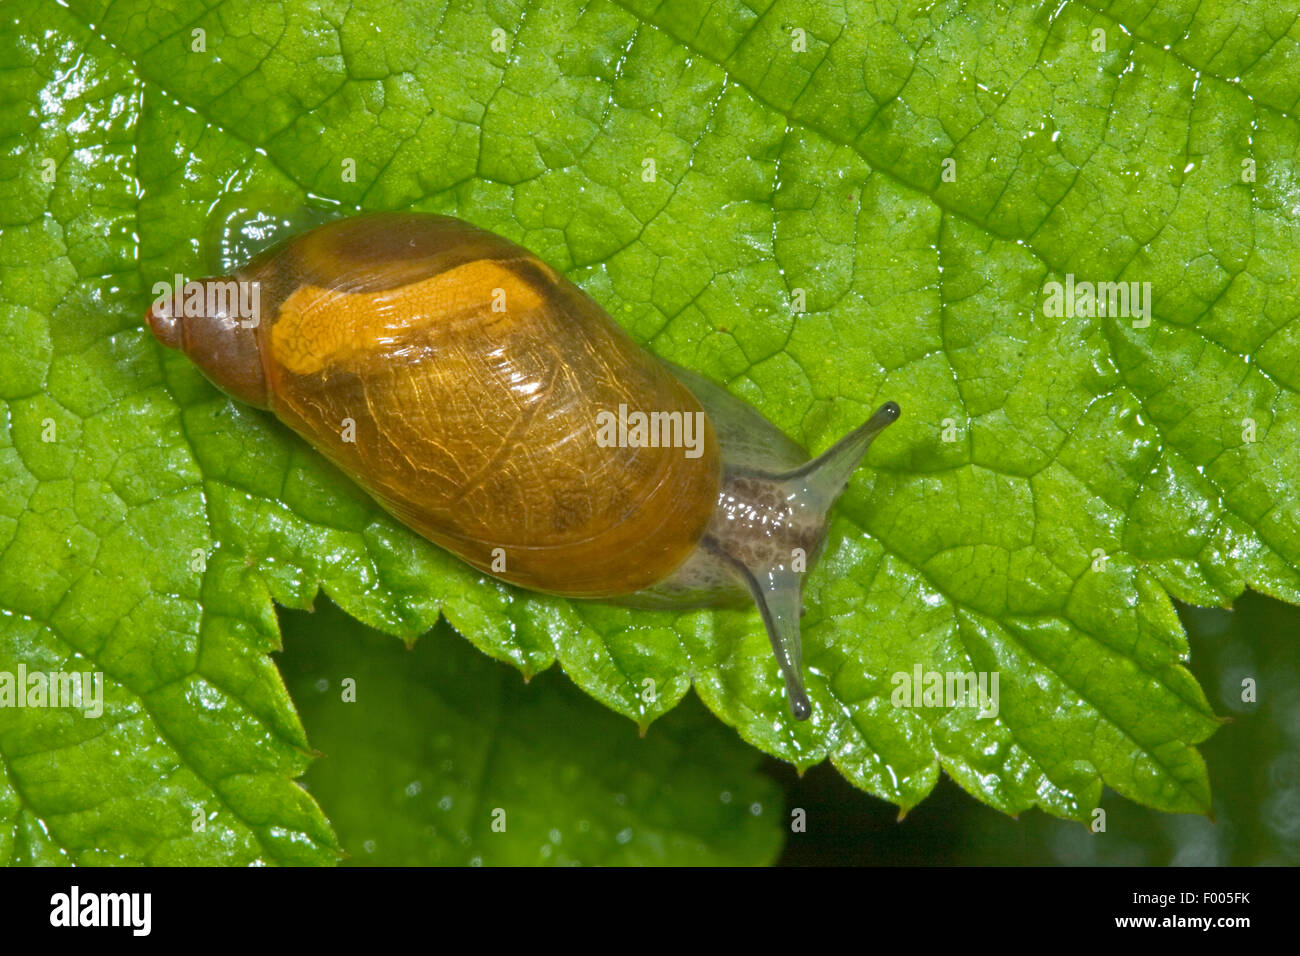 Escargot orange pourrie, grand escargot orange, O. h. kanabensis (Succinea putris européenne), l'escargot orange pourri sur une feuille, Allemagne Banque D'Images